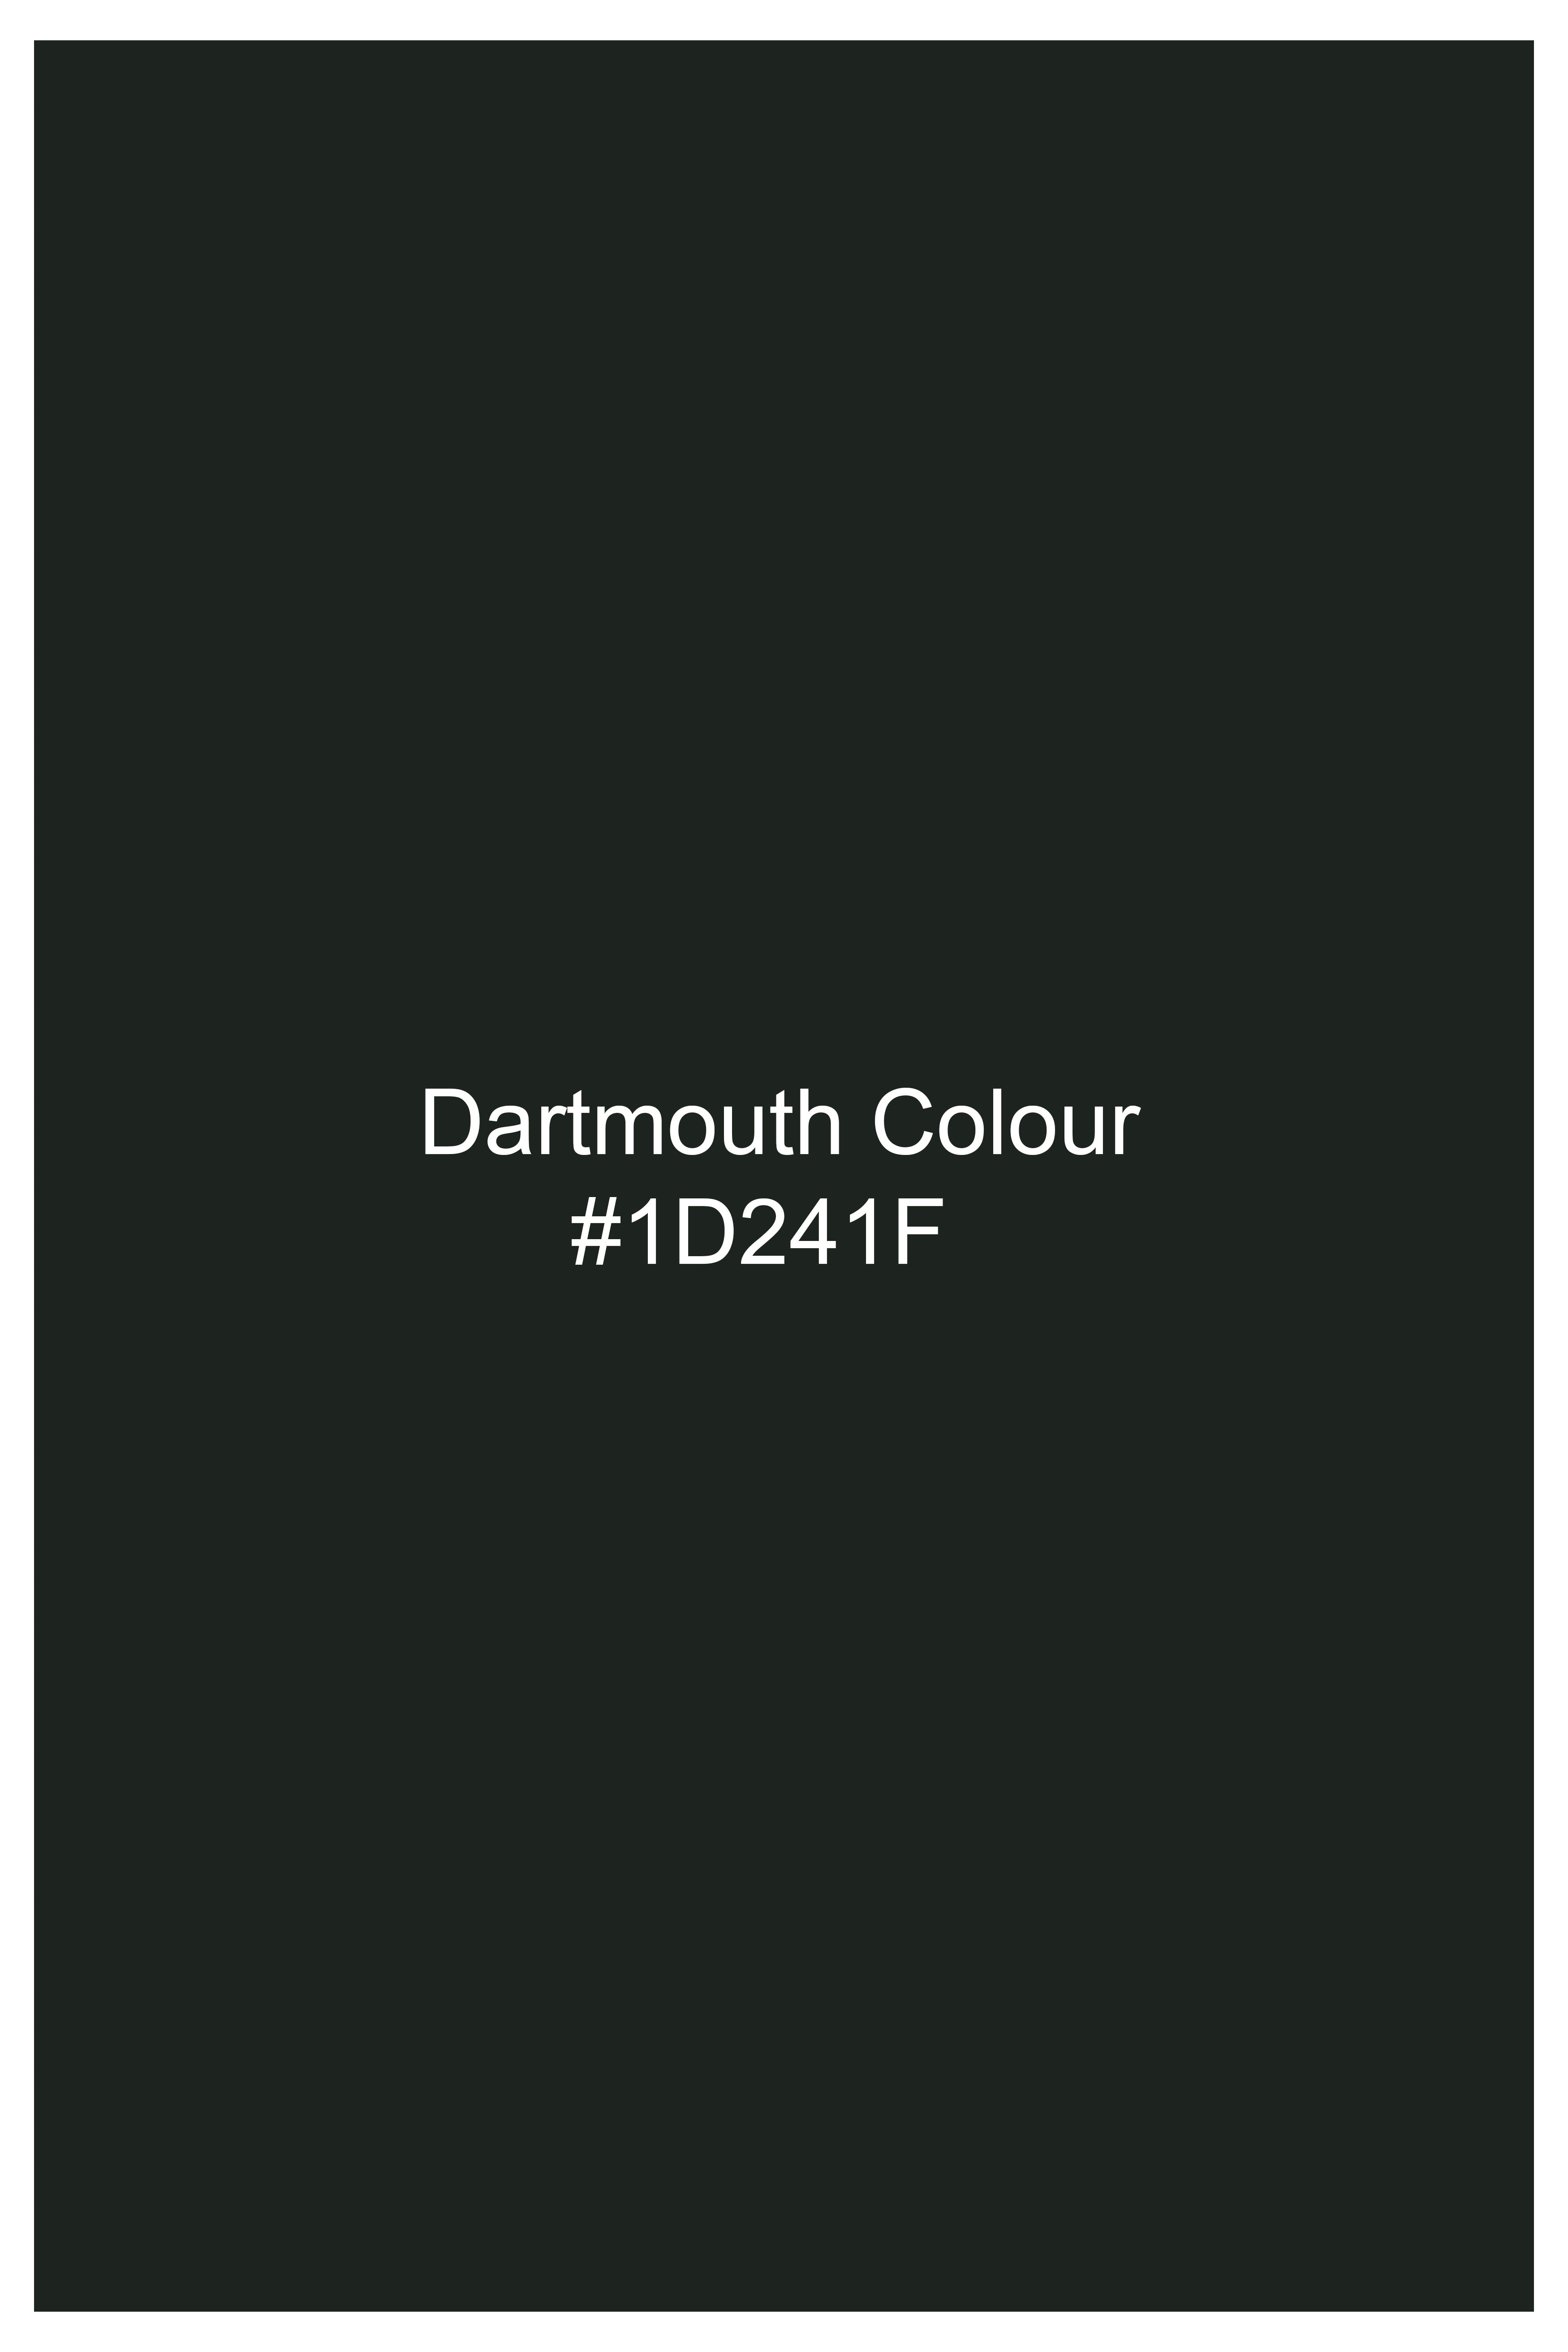 Dartmouth Green Wool Rich Cross Buttoned Bandhgala Designer Suit ST2822-D178-36,ST2822-D178-38,ST2822-D178-40,ST2822-D178-42,ST2822-D178-44,ST2822-D178-46,ST2822-D178-48,ST2822-D178-50,ST2822-D178-52,ST2822-D178-54,ST2822-D178-56,ST2822-D178-58,ST2822-D178-60